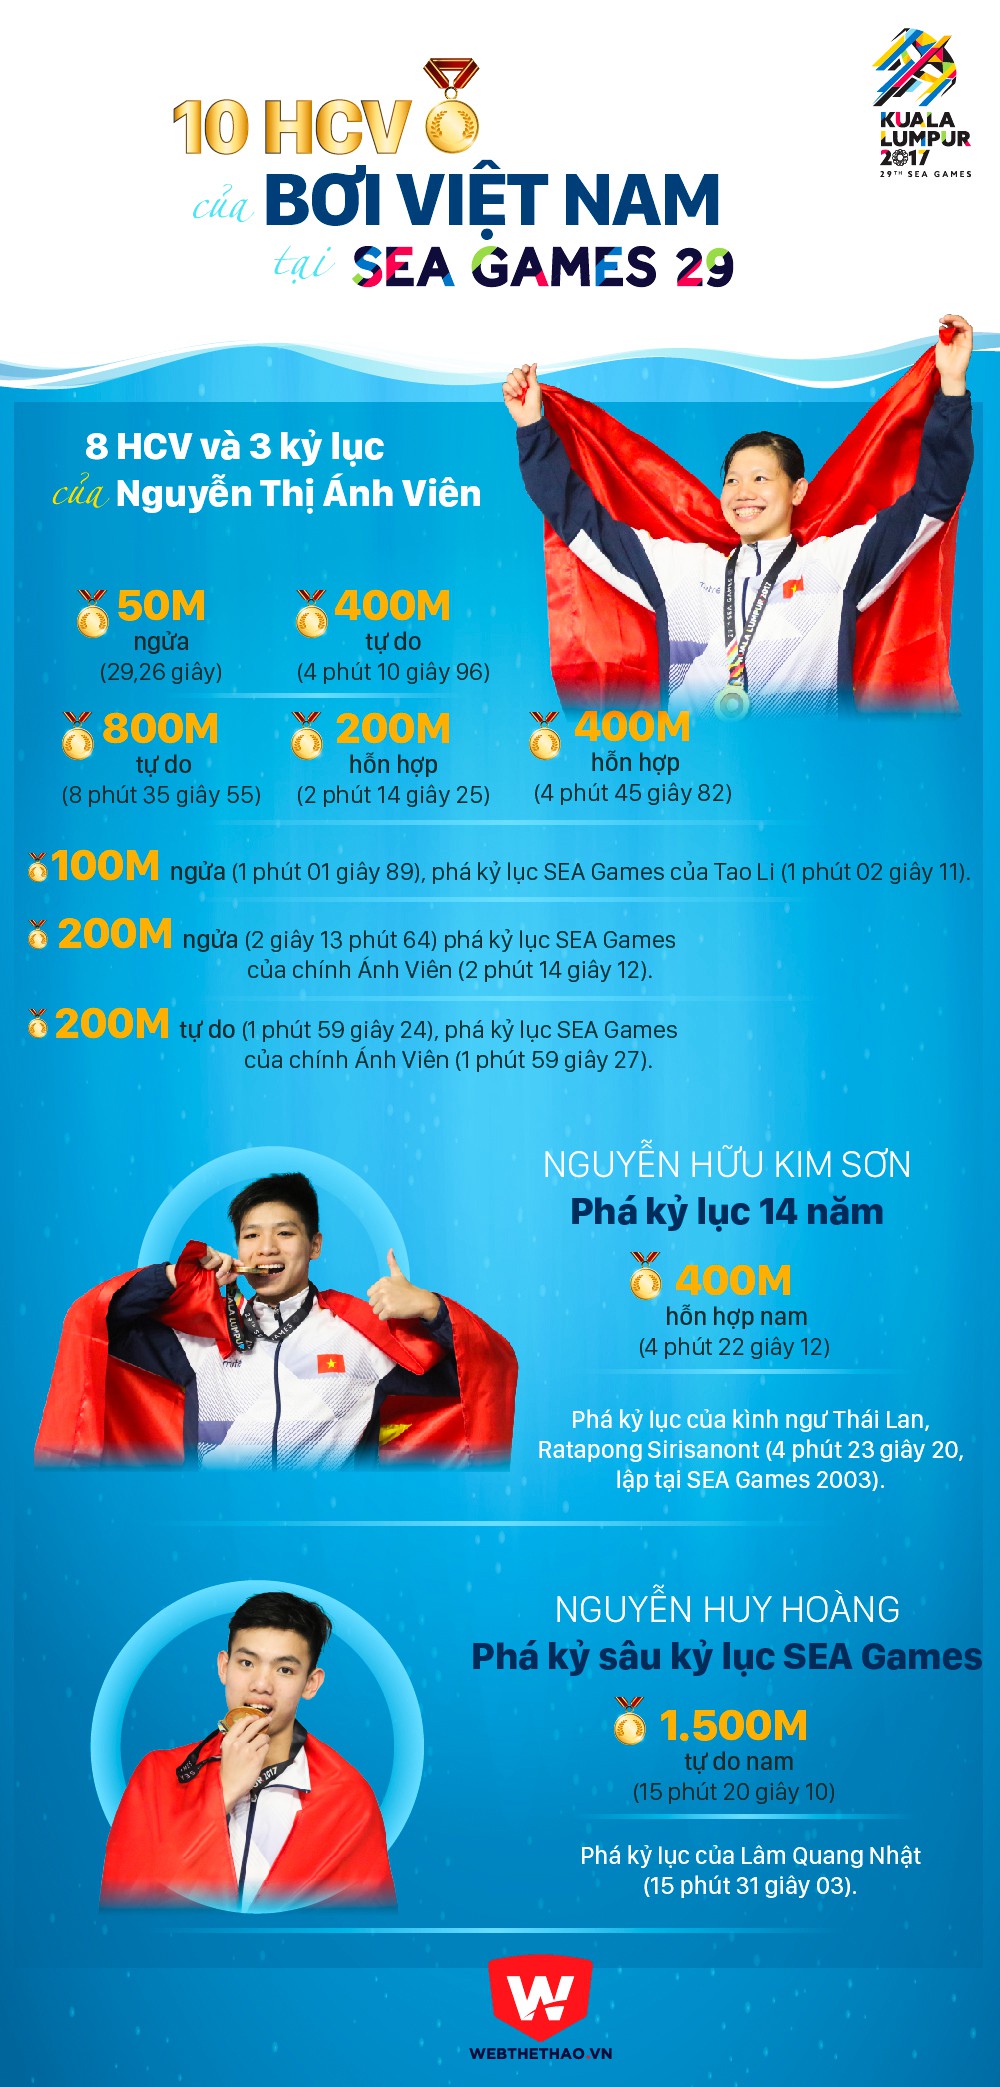 Bảng thành tích vàng của bơi Việt Nam ở SEA Games 29. Đồ họa: Bá Đức